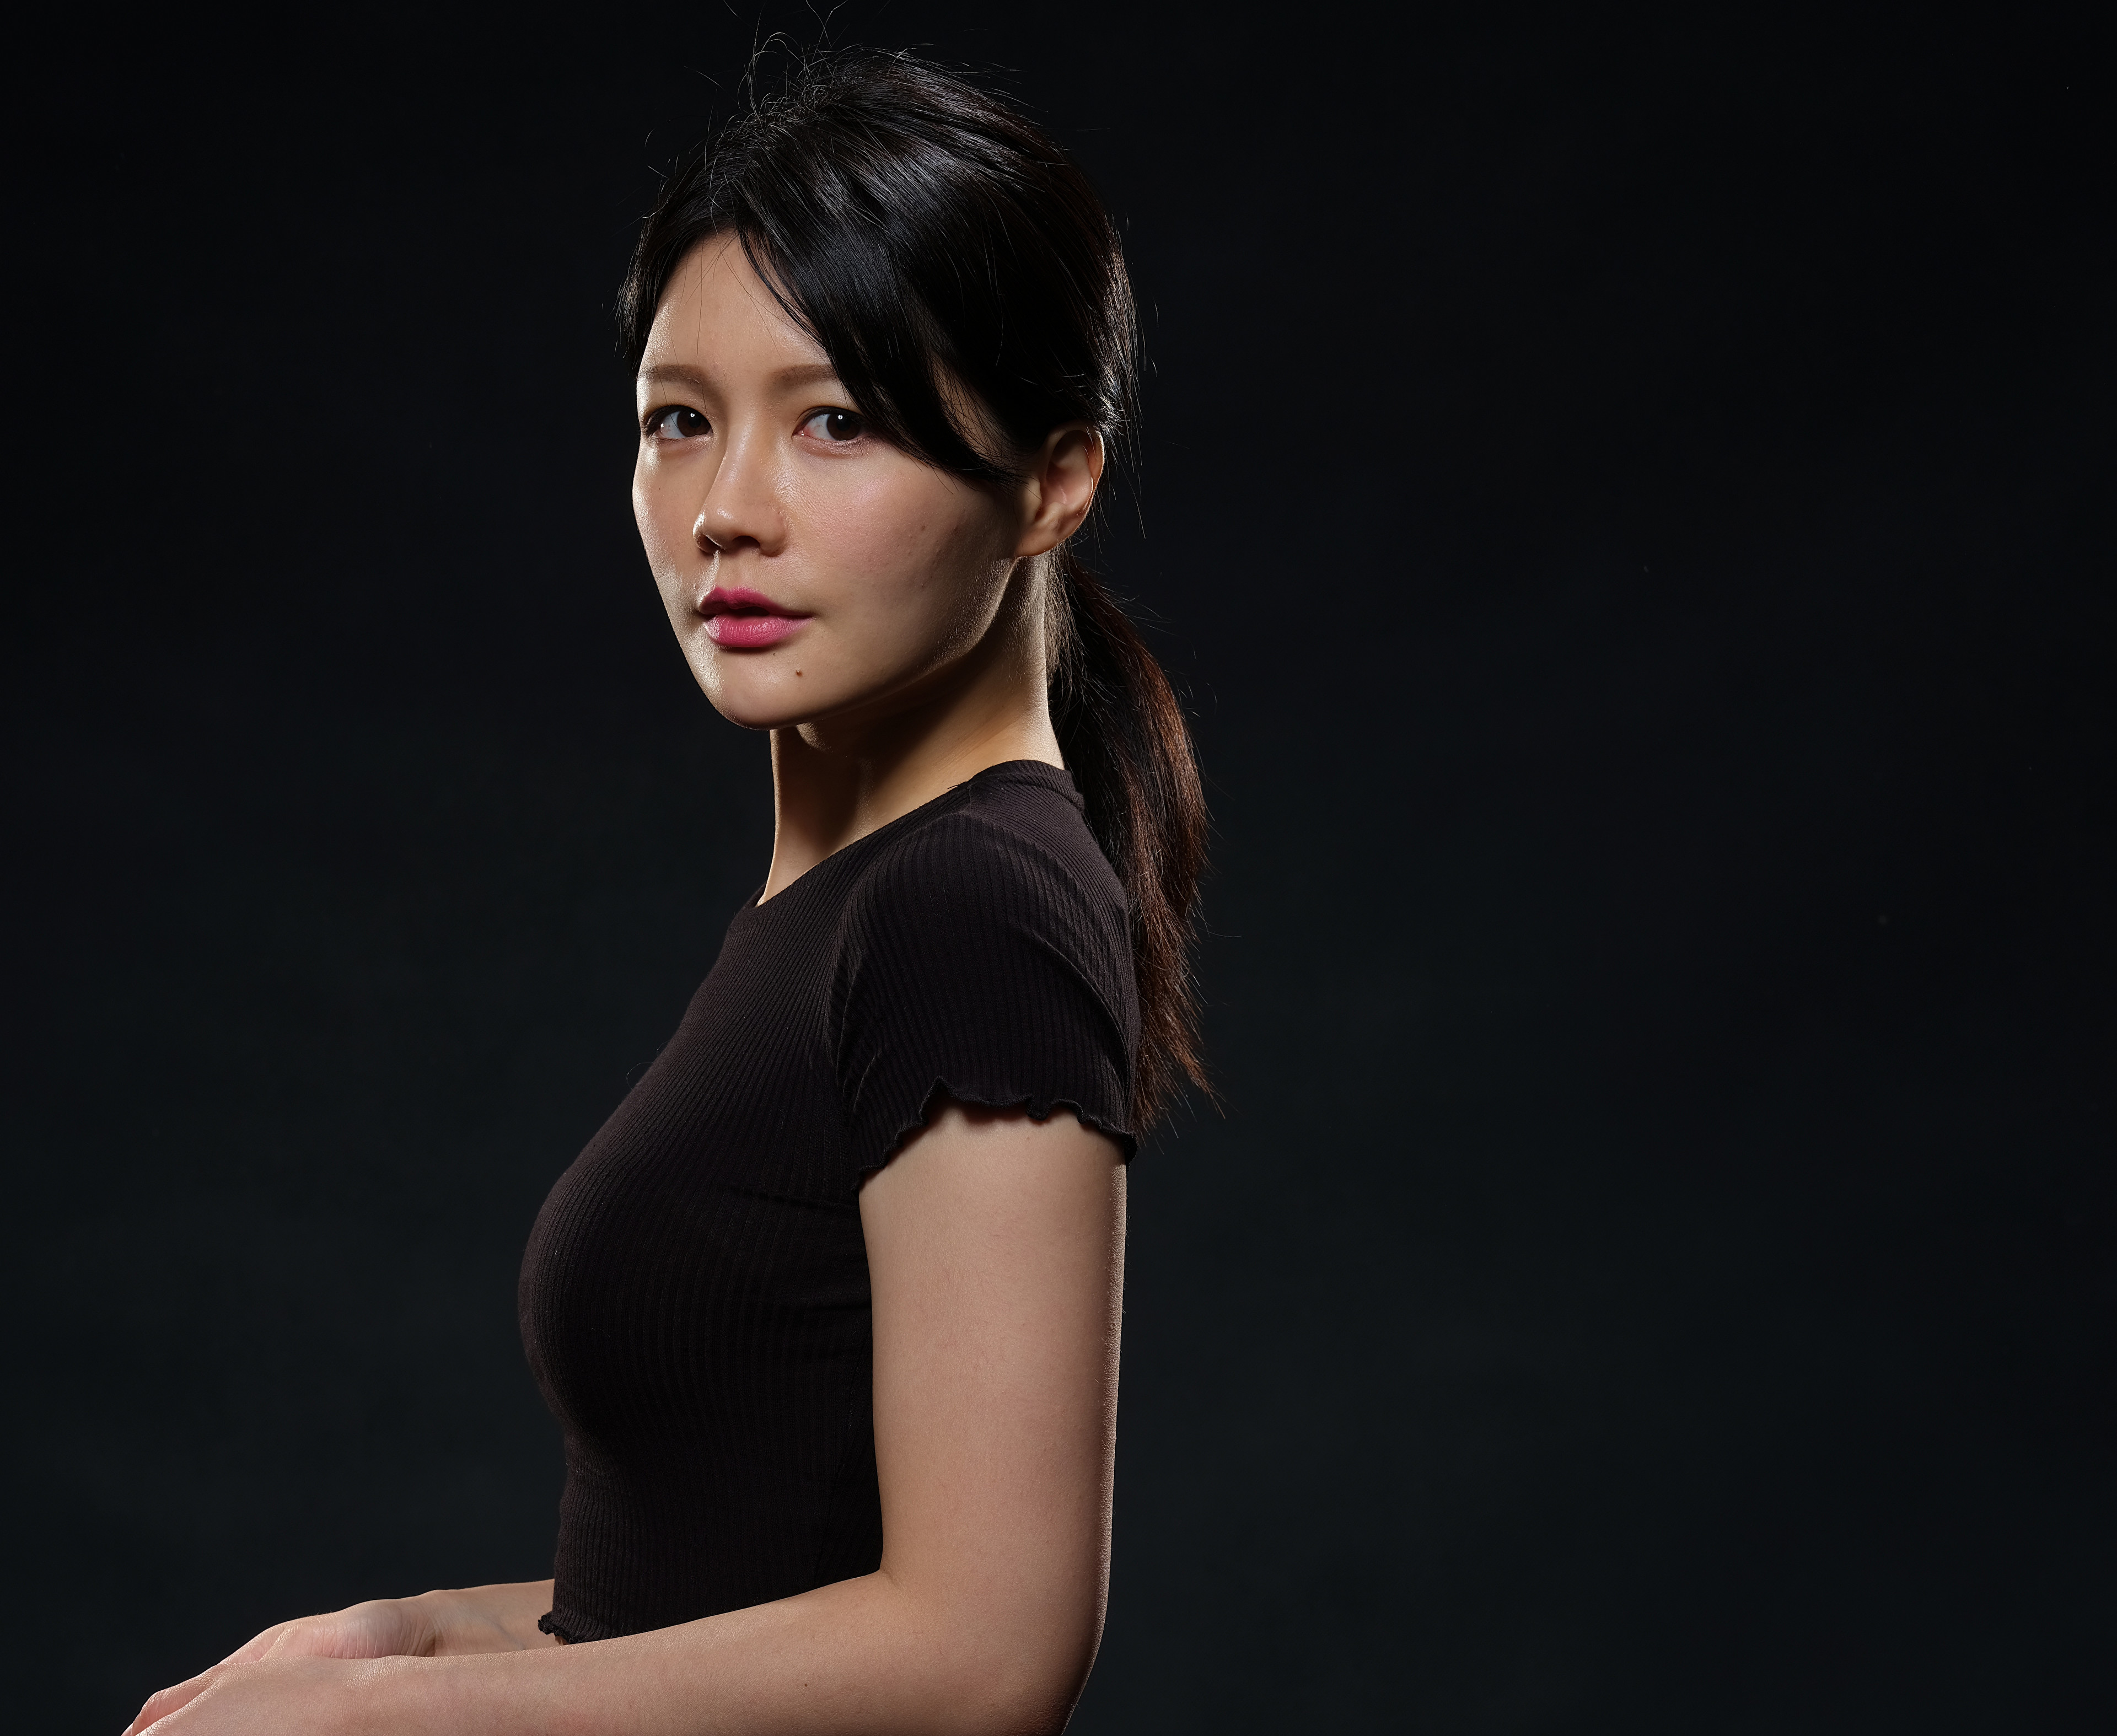 Asian Women Model Long Hair Brunette Black Shirt Ponytail Jane Chen 3840x3149